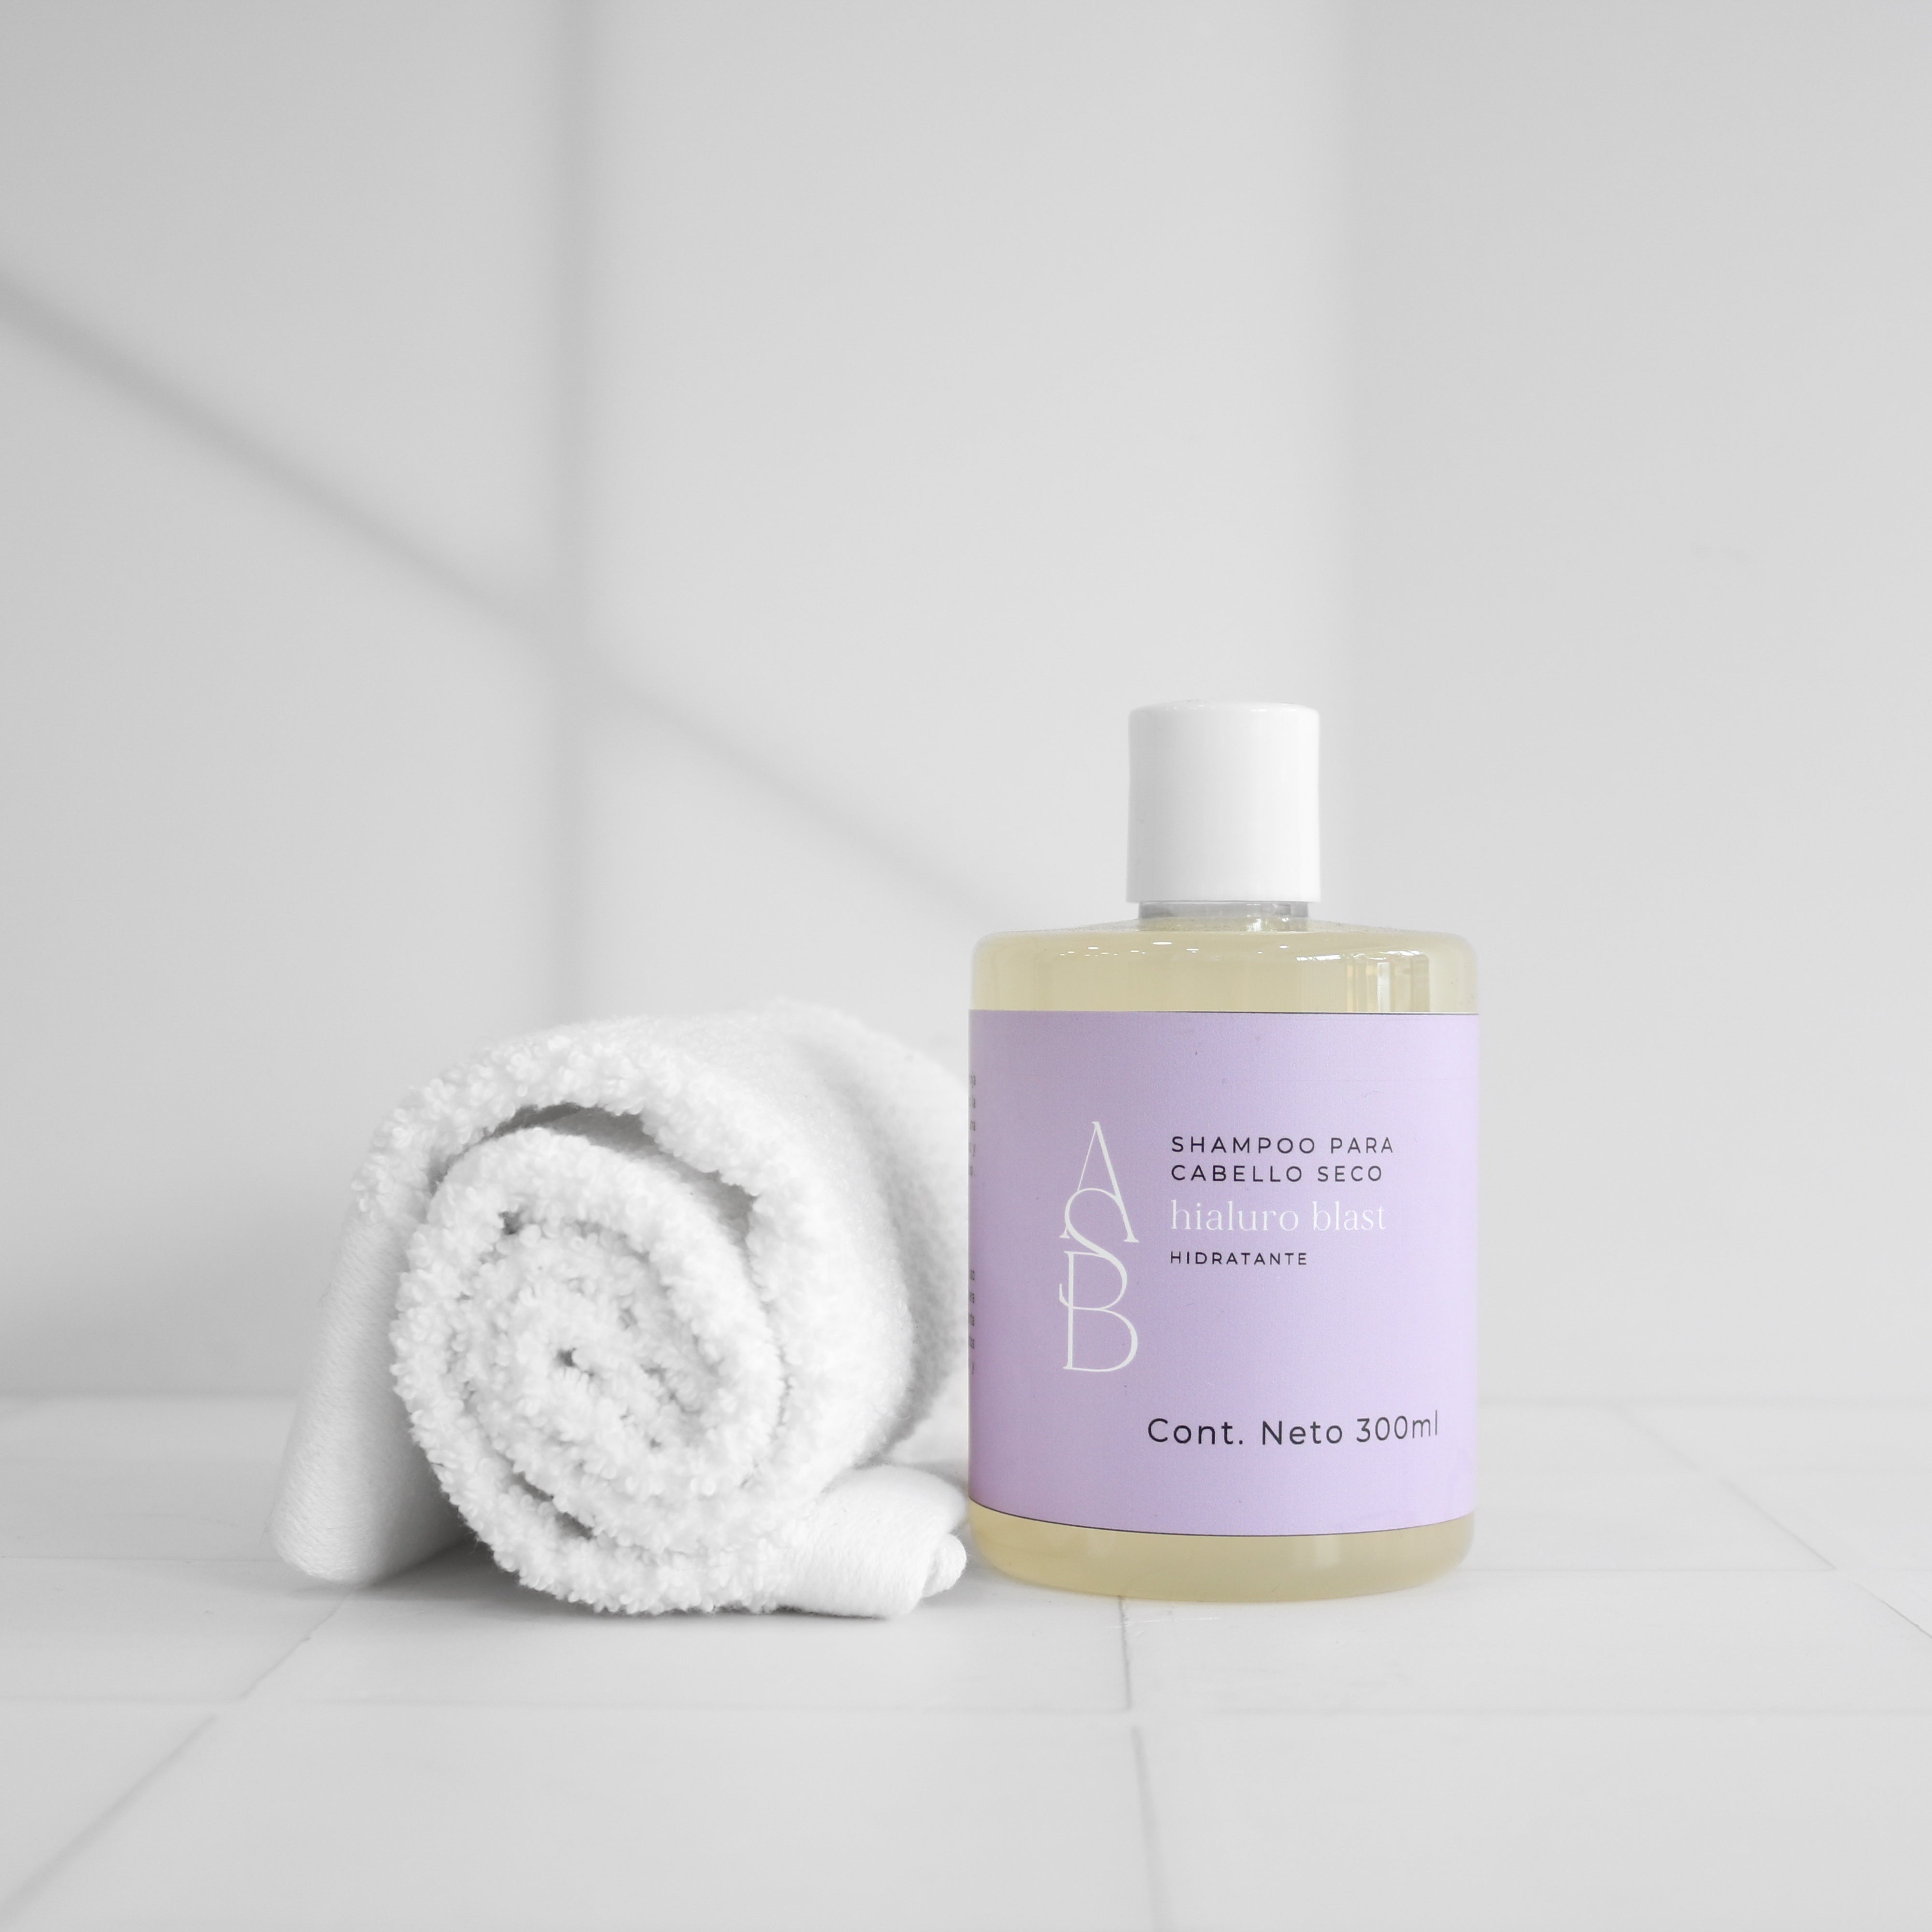 Hialuro blast - Shampoo hidratante para cabello seco